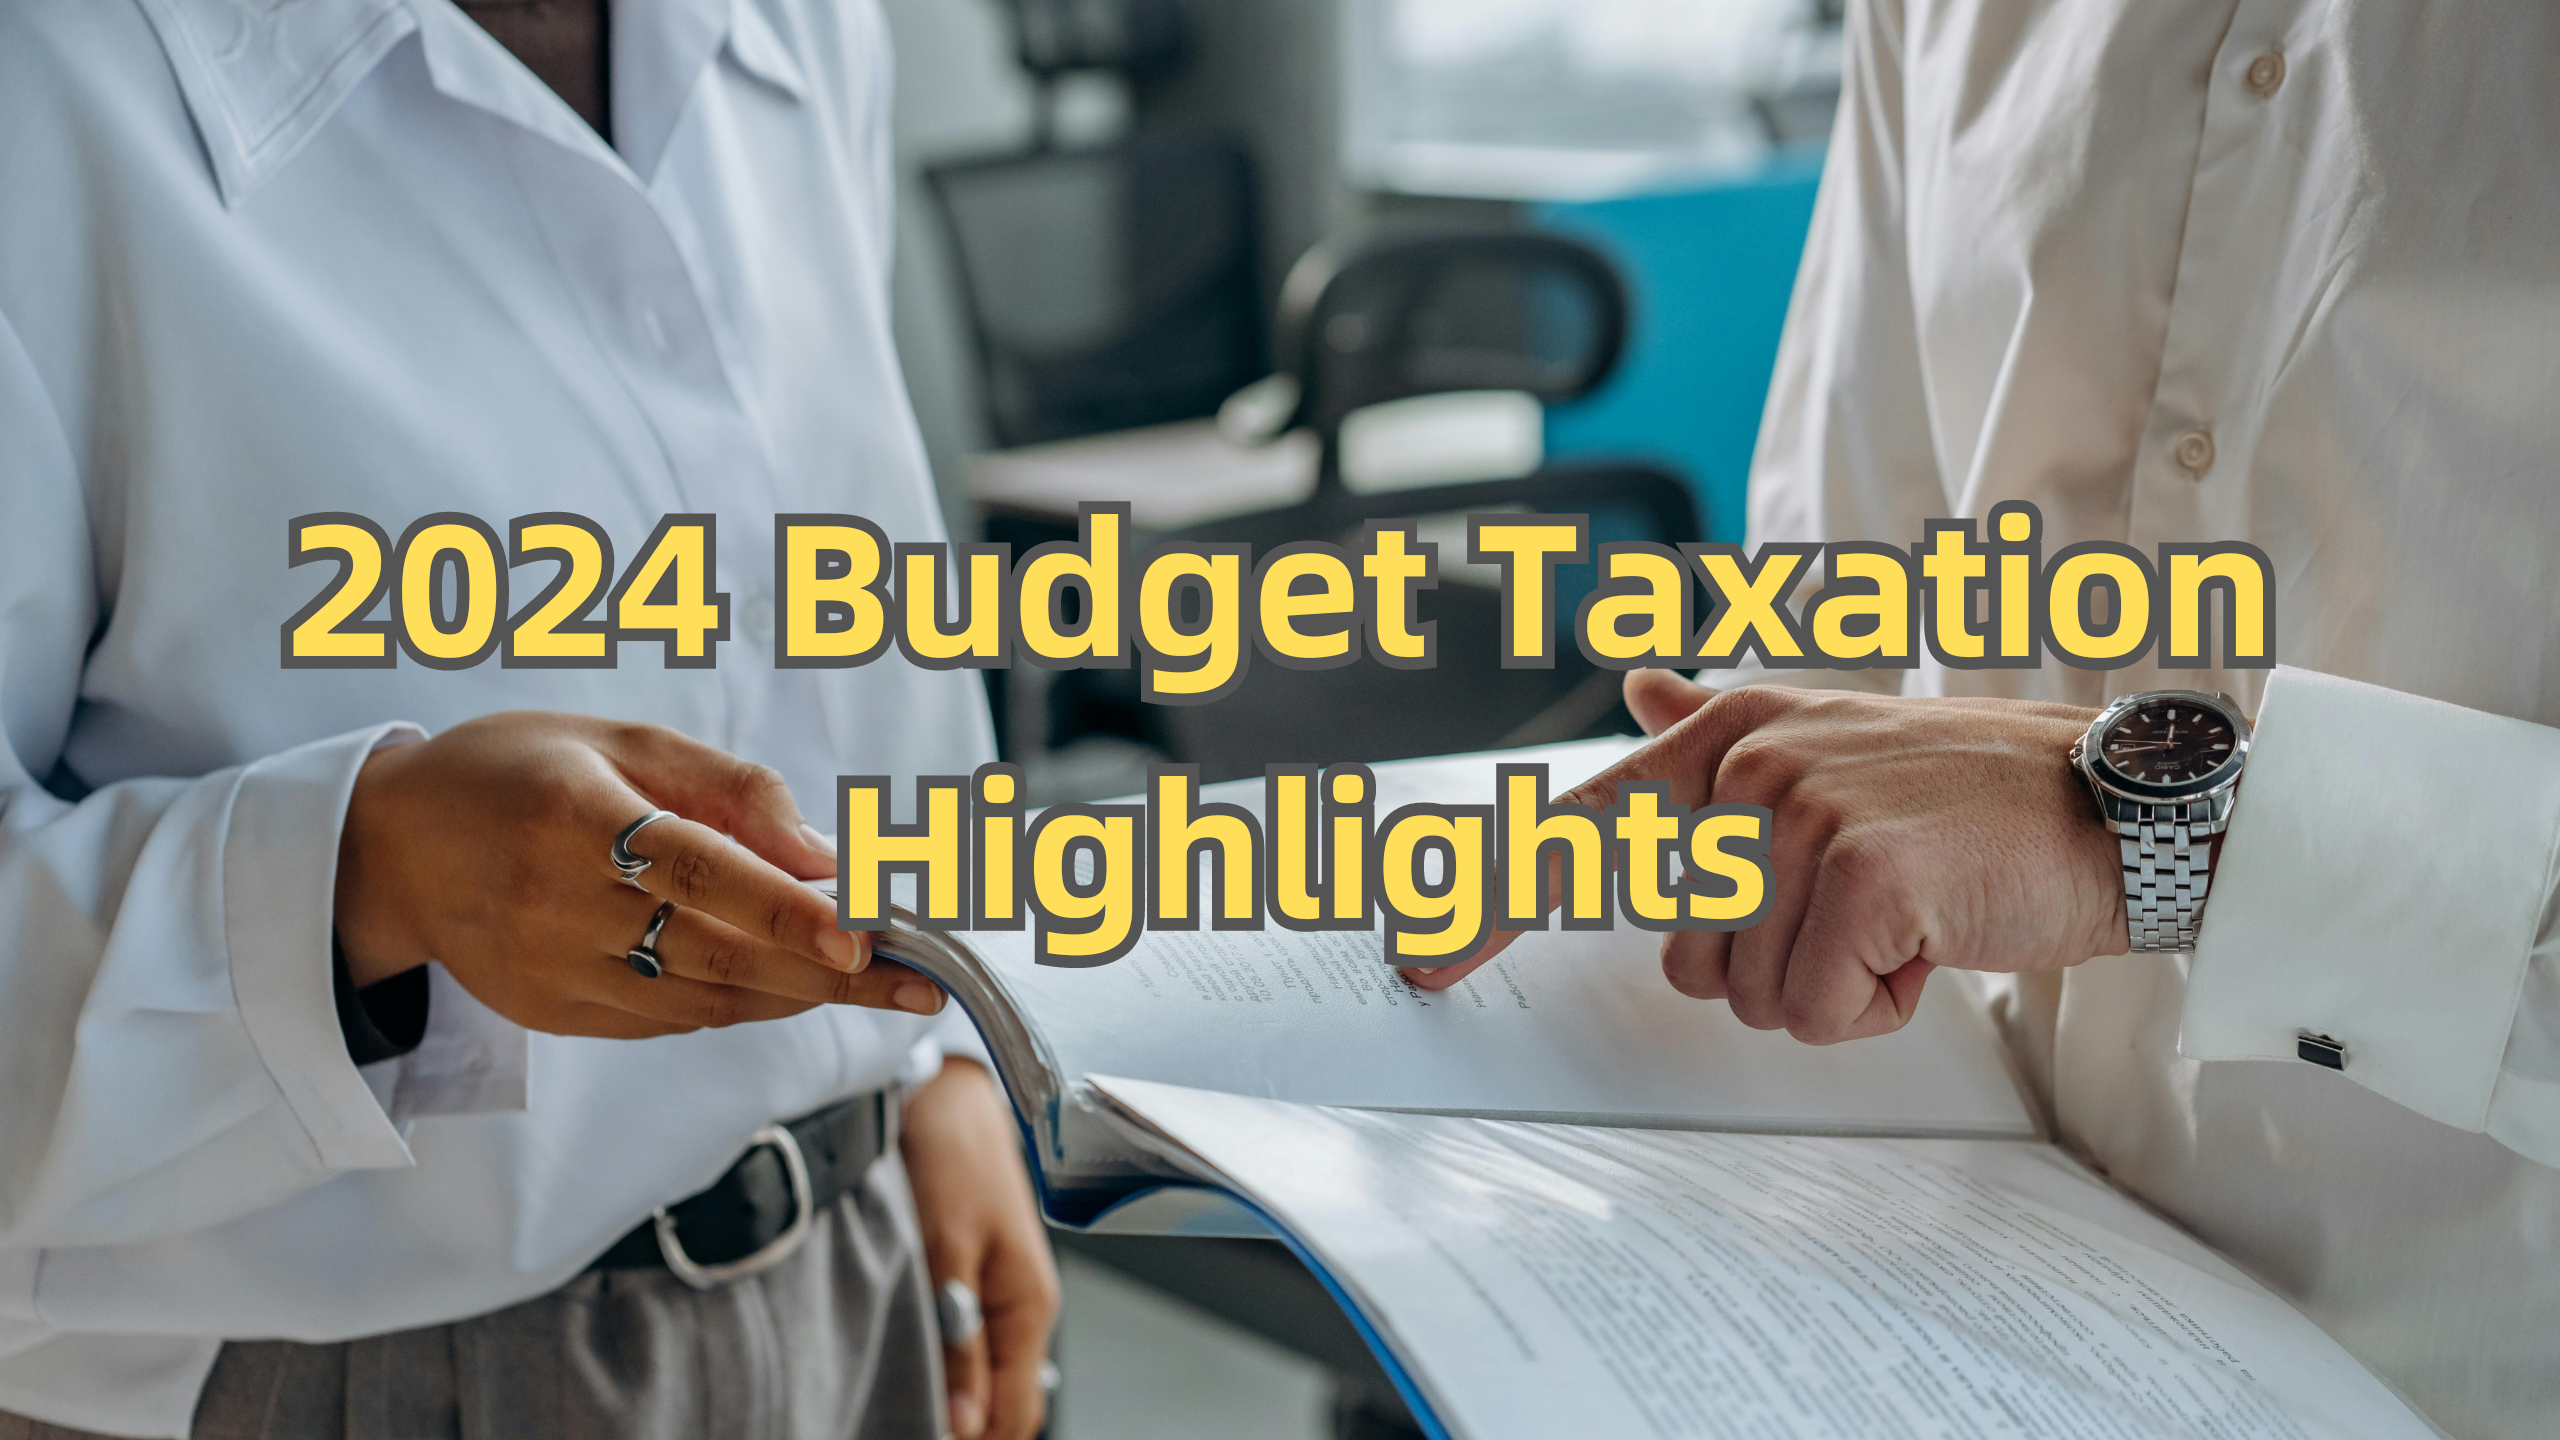 Budget Taxation Highlights